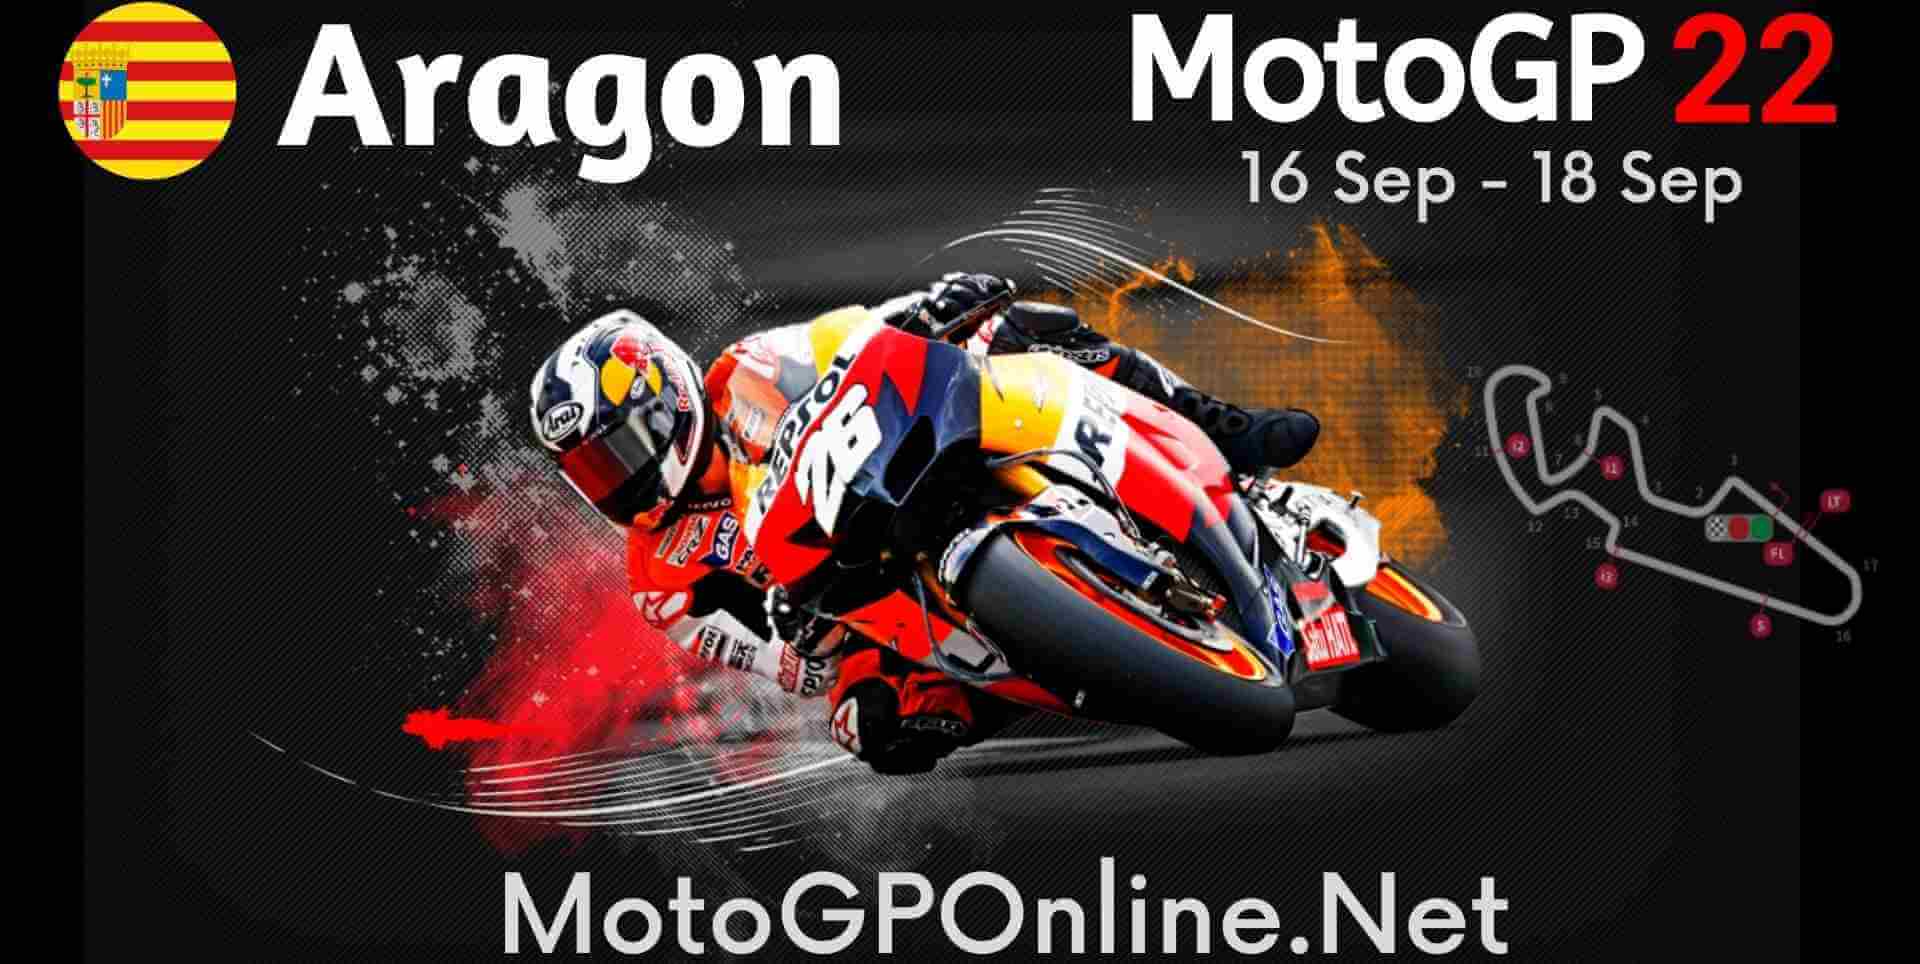 Watch Gran Premio Iveco De Aragon 2013 Online